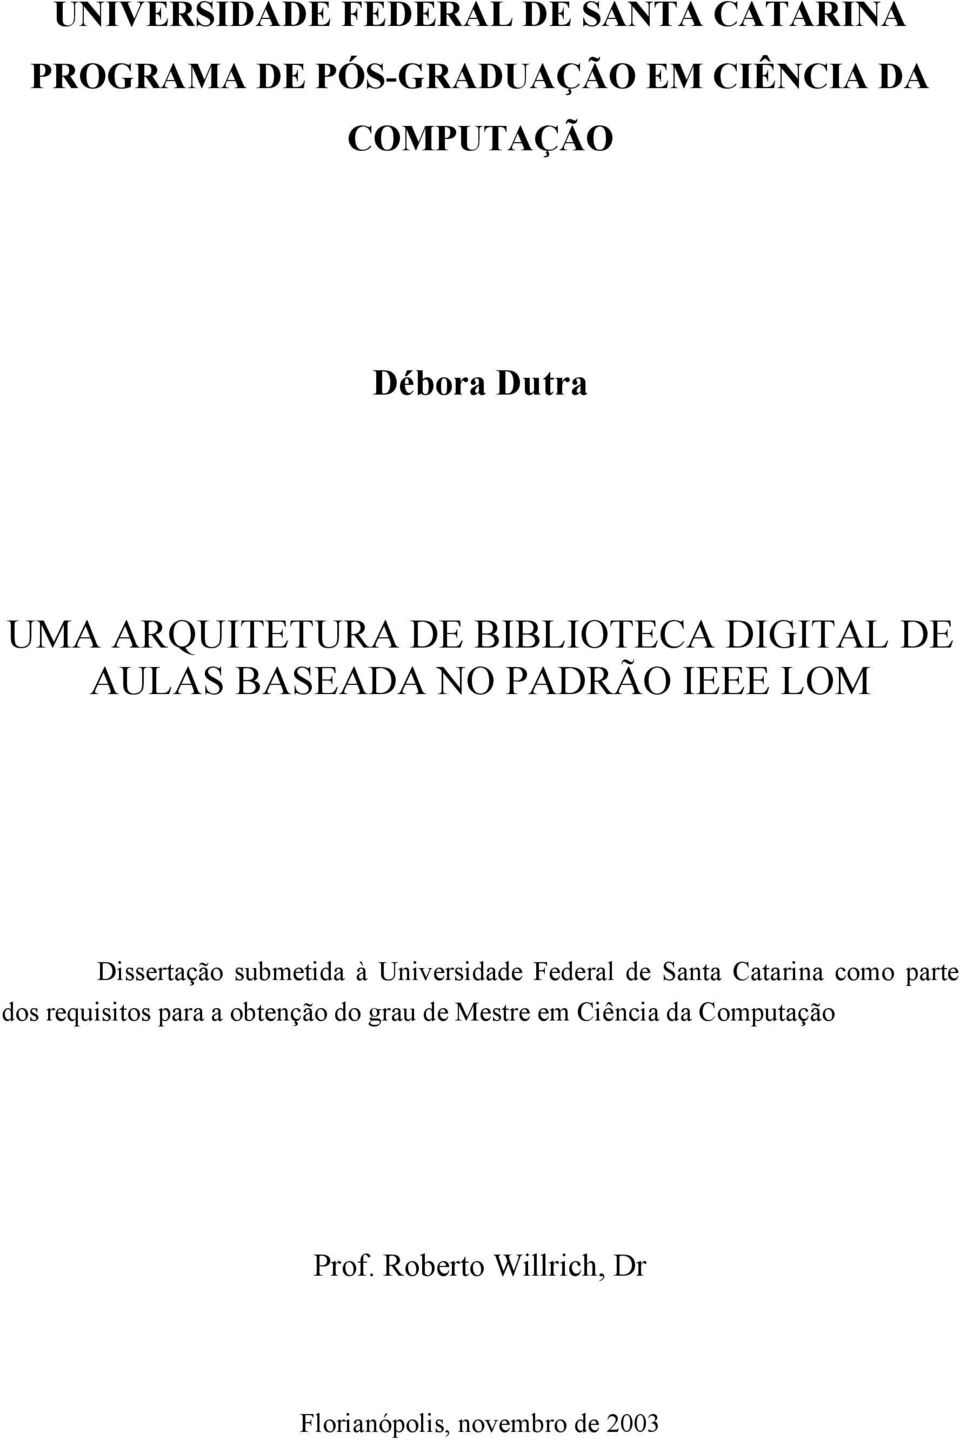 Dissertação submetida à Universidade Federal de Santa Catarina como parte dos requisitos para a